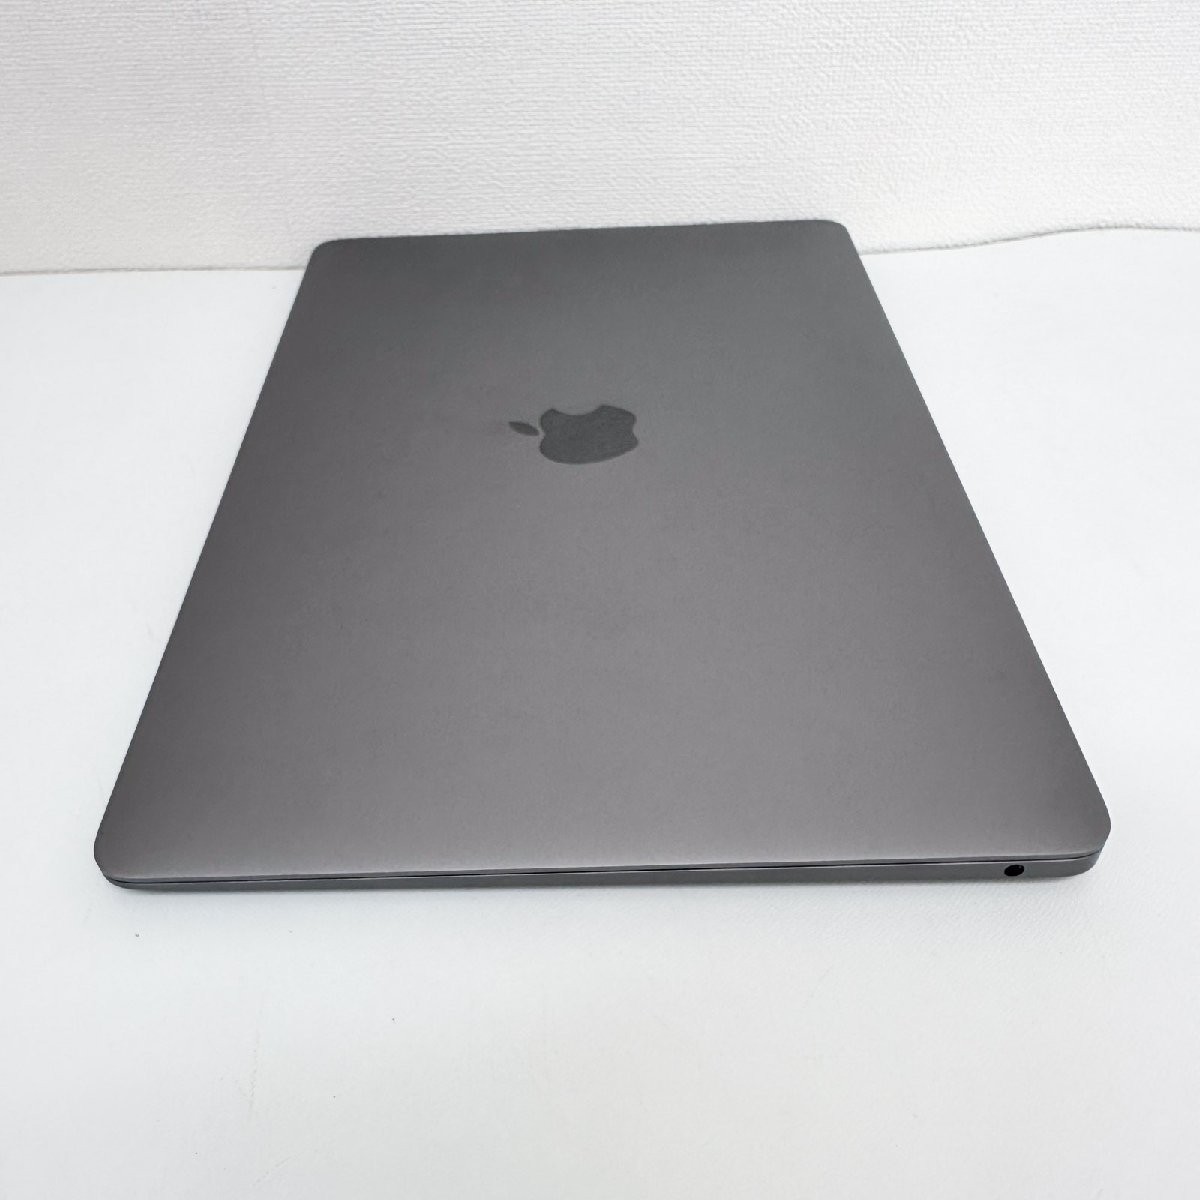 アップル Apple ノートパソコン MacBook Air 13-inch Core i3 8GB 256GB MWTJ2J/A 充放電回数 5 中古 初期化済 [質イコー]_画像5